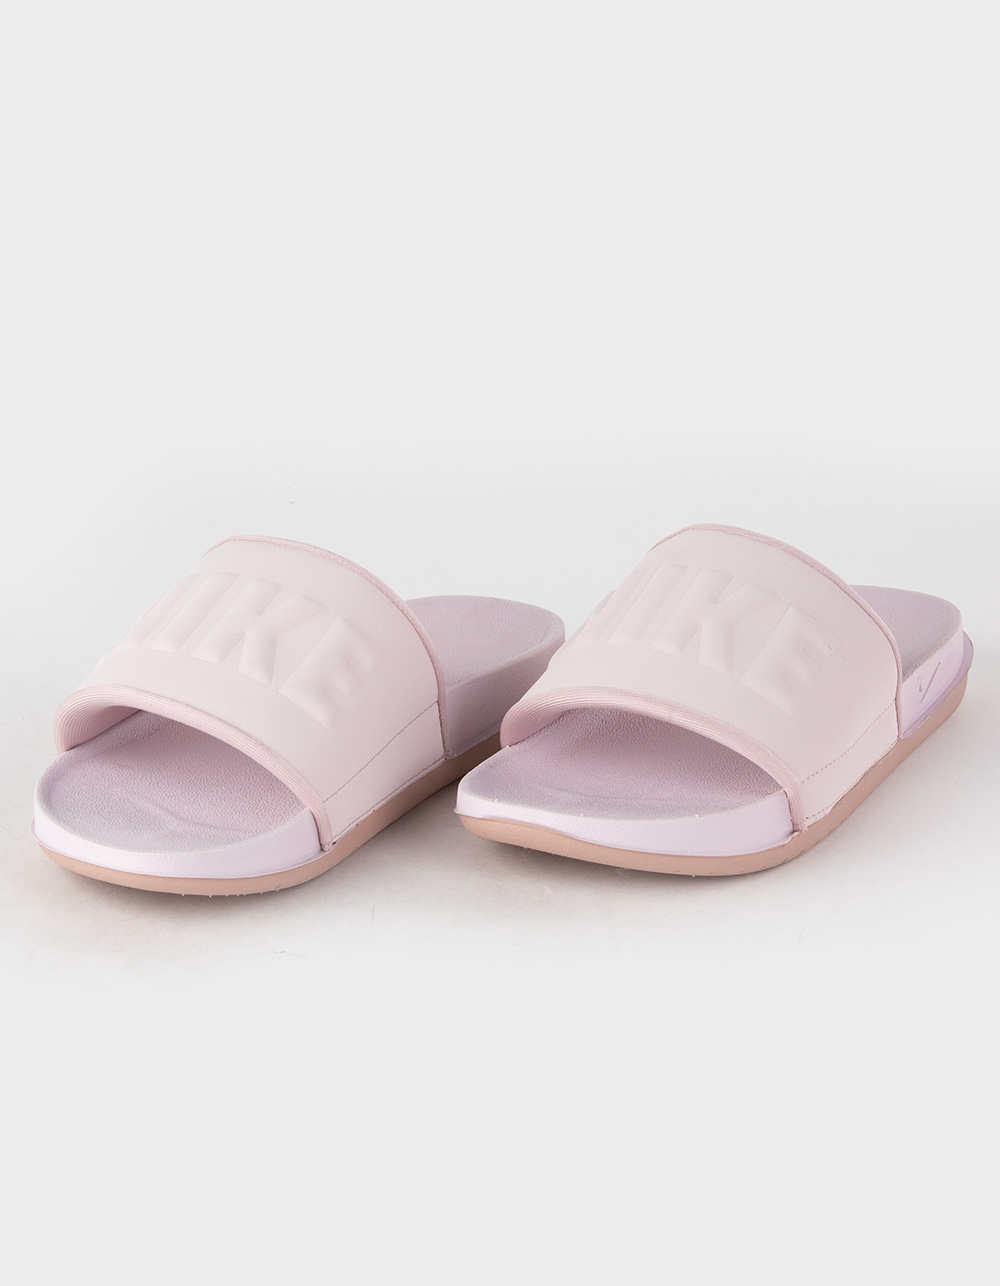 Nike Kawa Slide Sandals for Women | Mercari